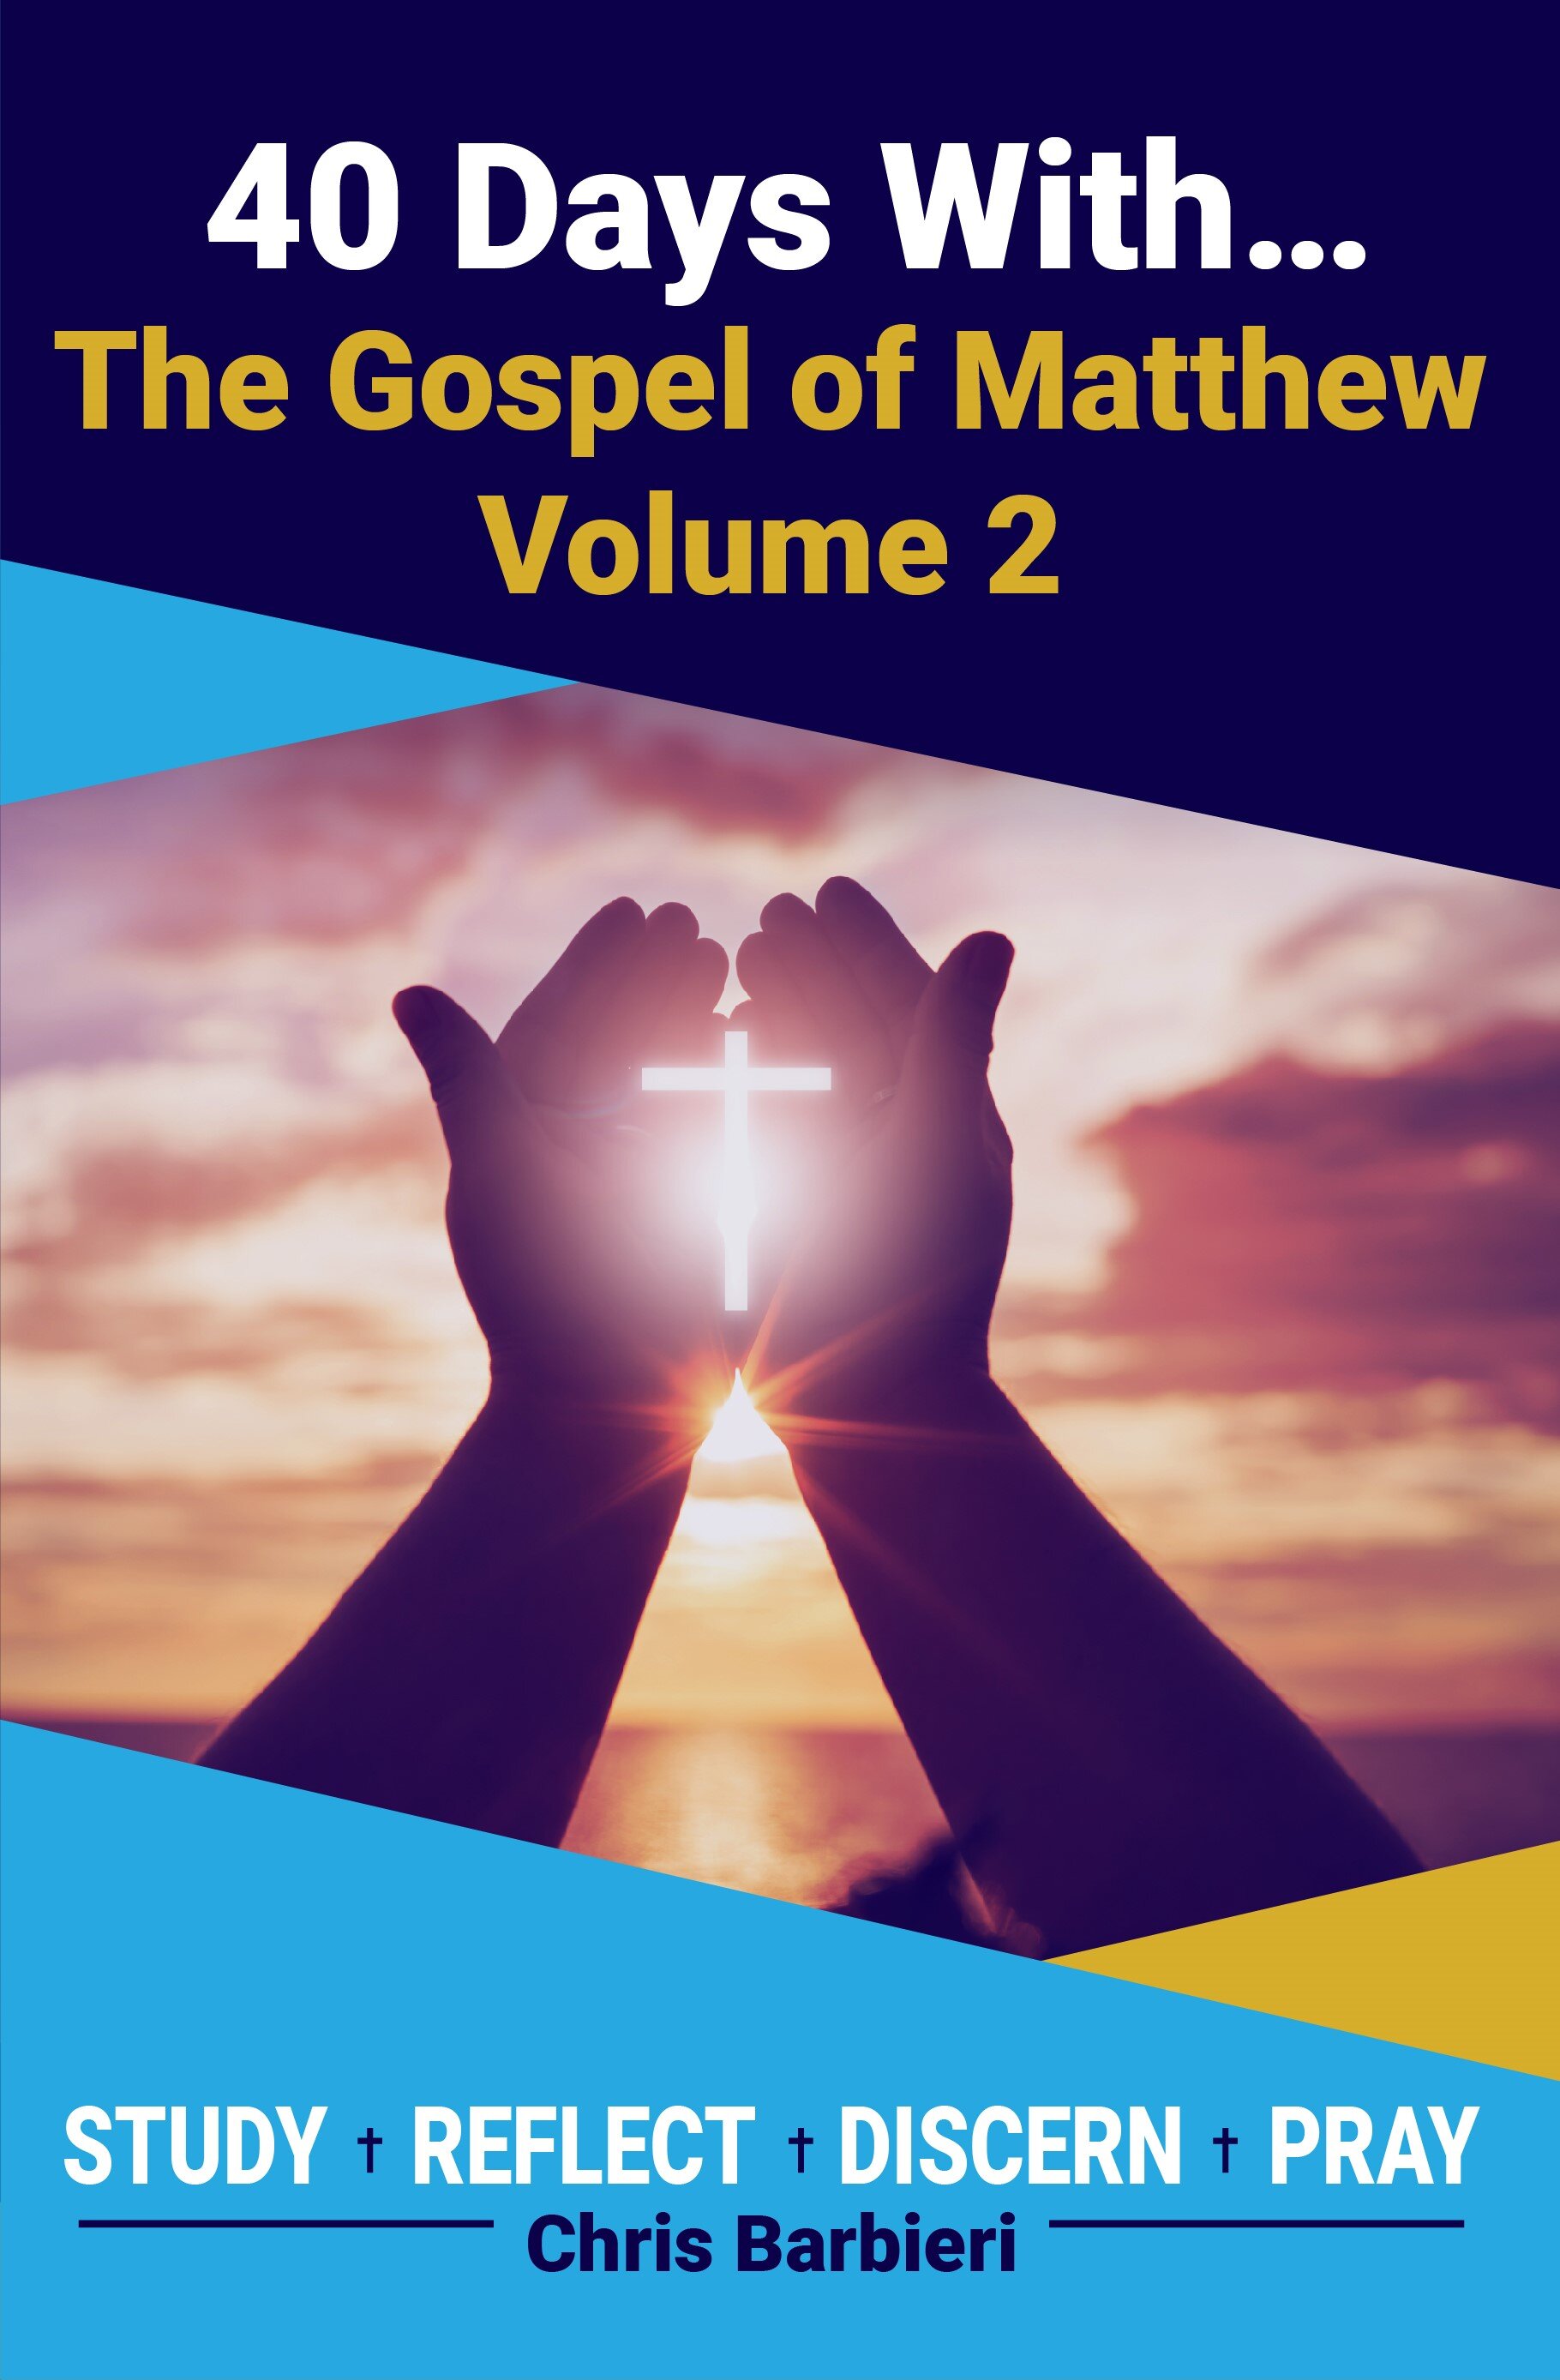 The Gospel of Matthew, Volume 2-Updated-01 - Front.jpg